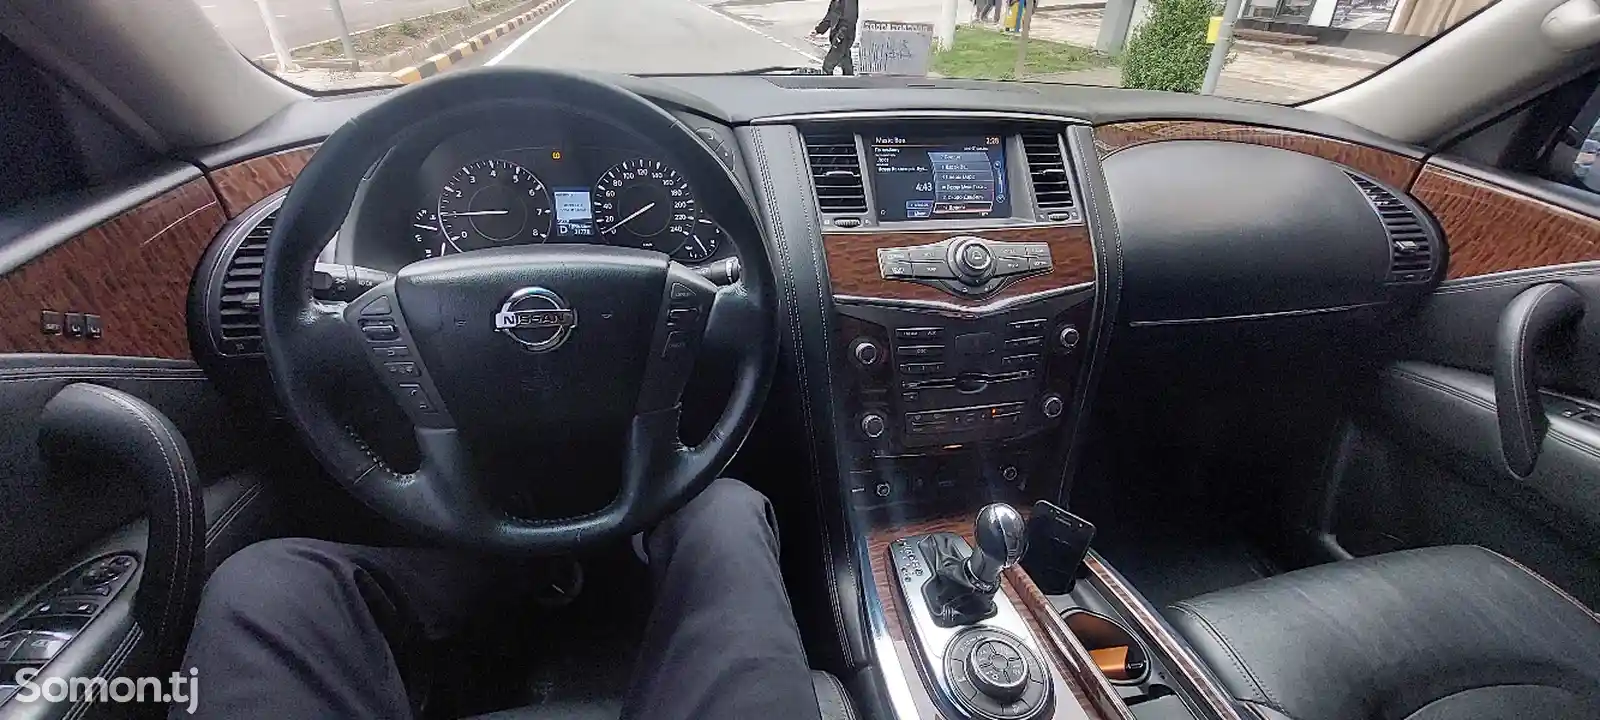 Nissan Patrol, 2015-10